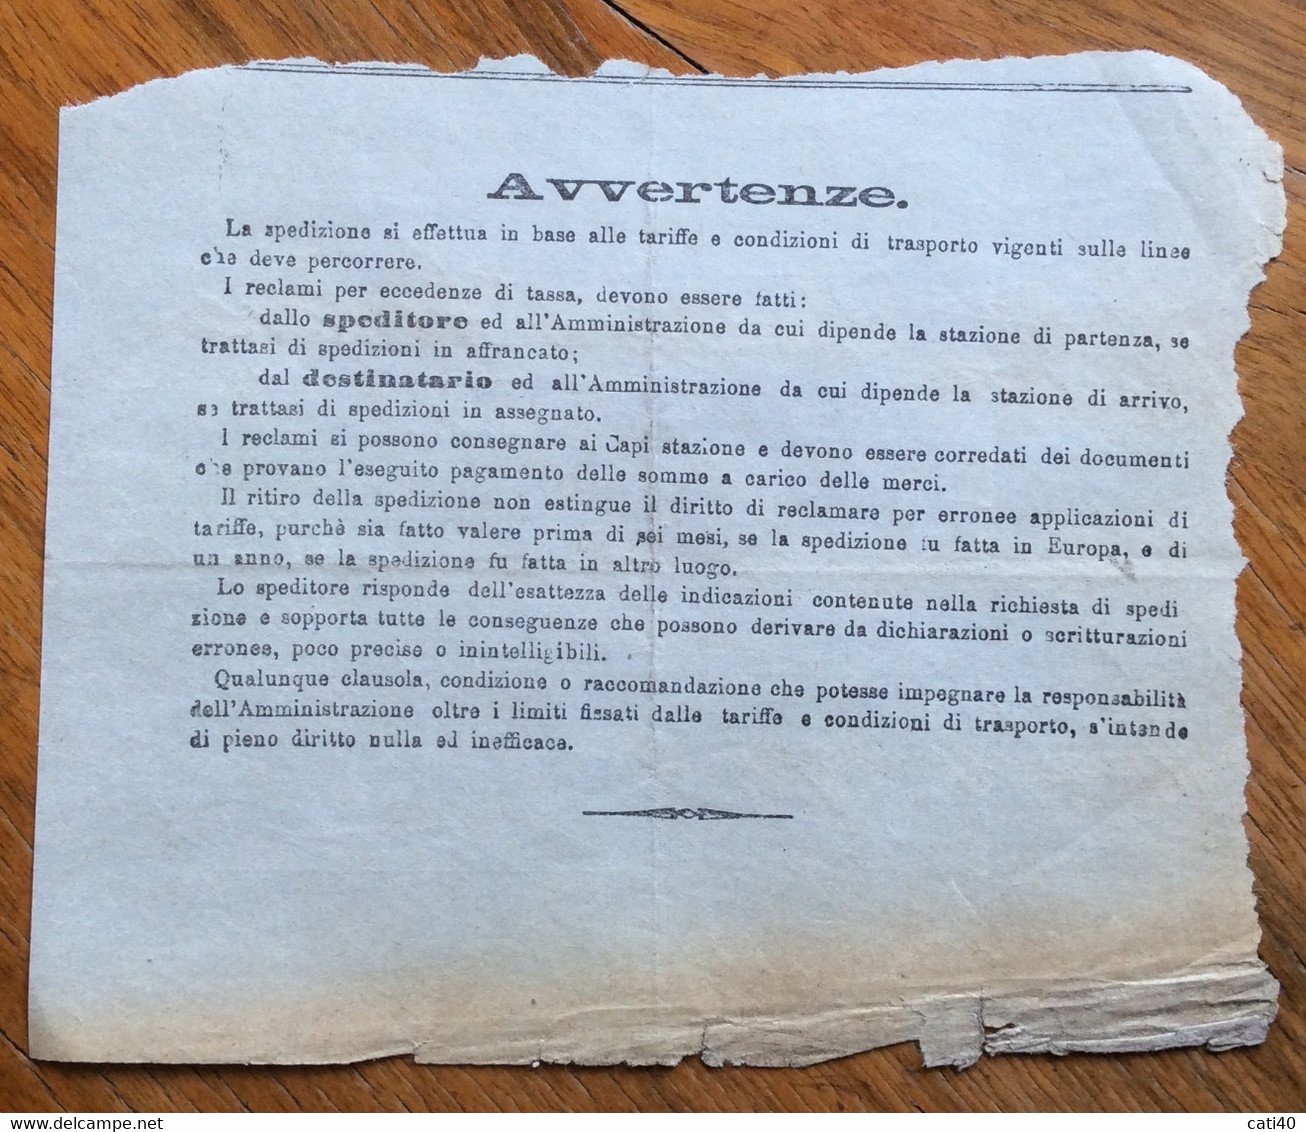 STRADE FERRATE DEL MEDITERRANEO - RICEVUTA SPEDIZIONE DA TORINO A GARLASCO IN DATA 11 GIUGNO 1904 - Europe